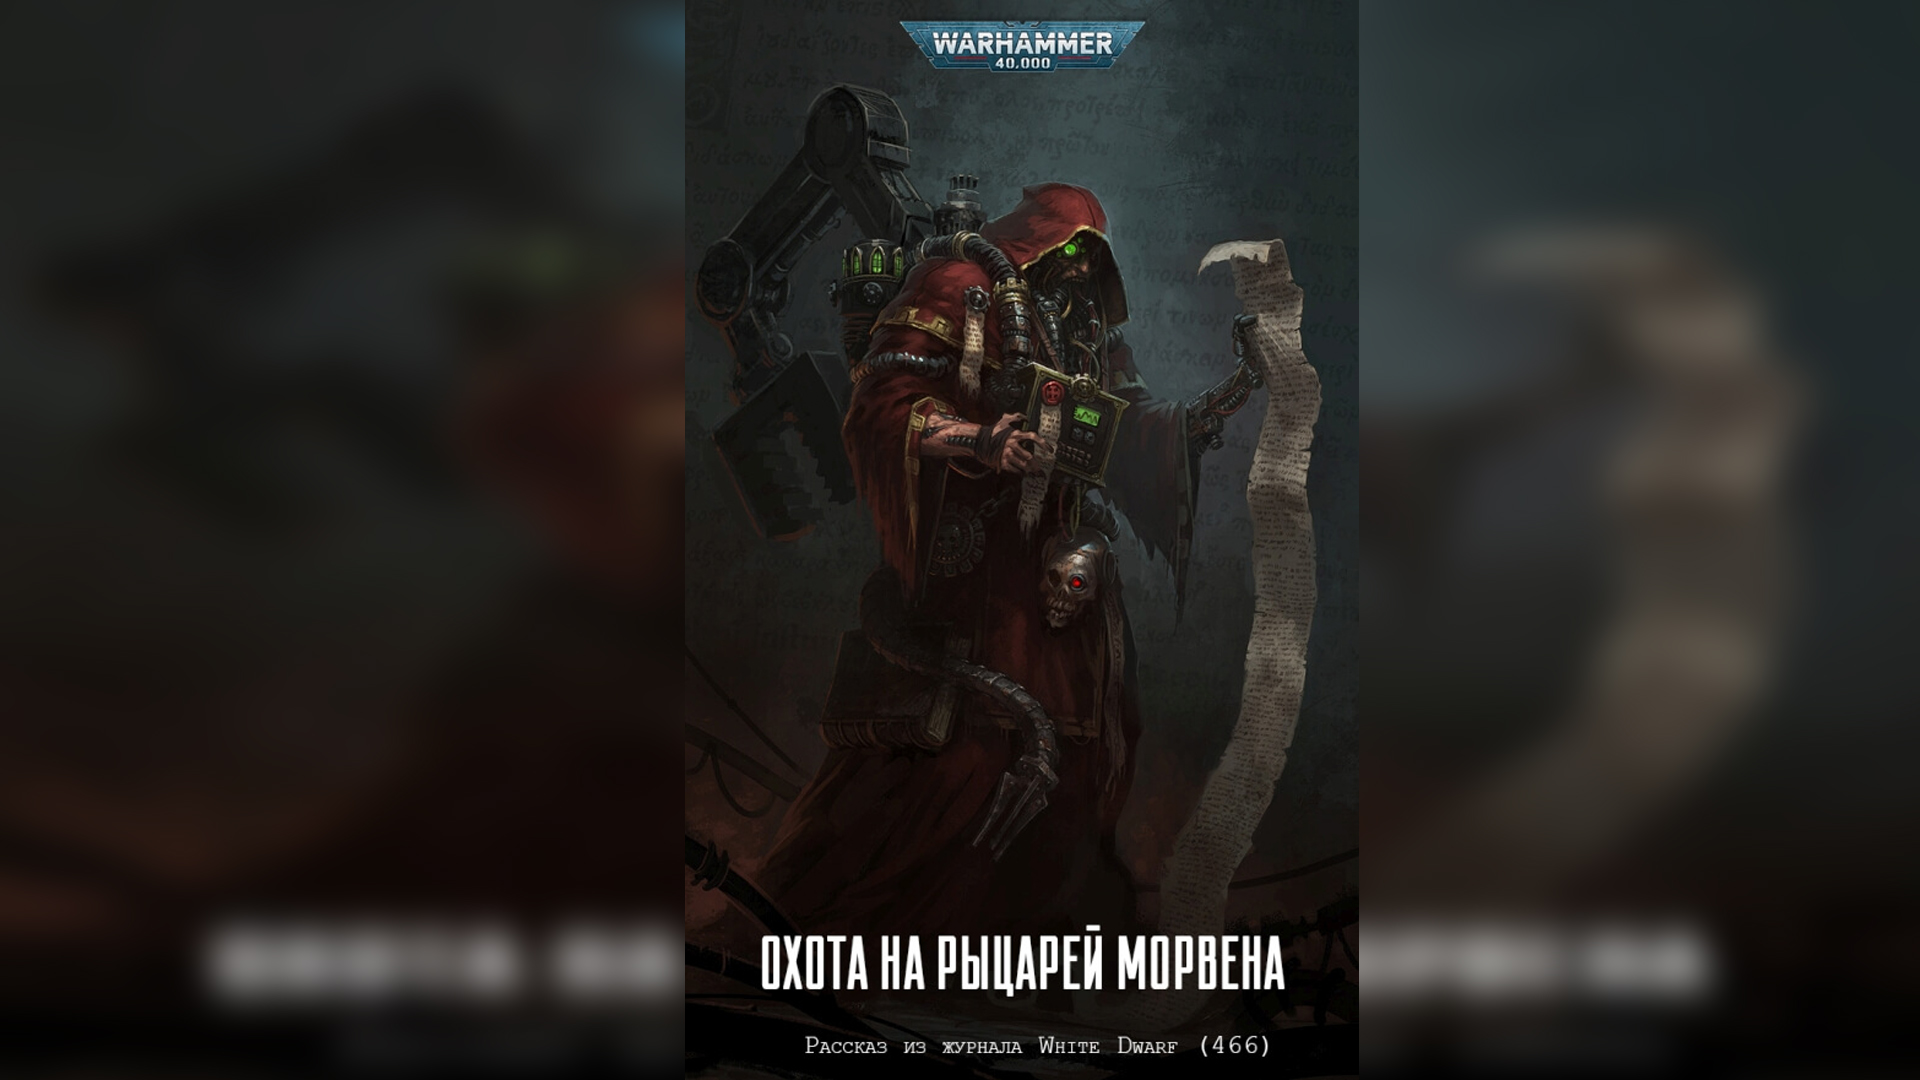 Охота на Рыцарей Морвена / "The Hunt for Mhorwen" (2021) - 466 by TheStation Warhammer